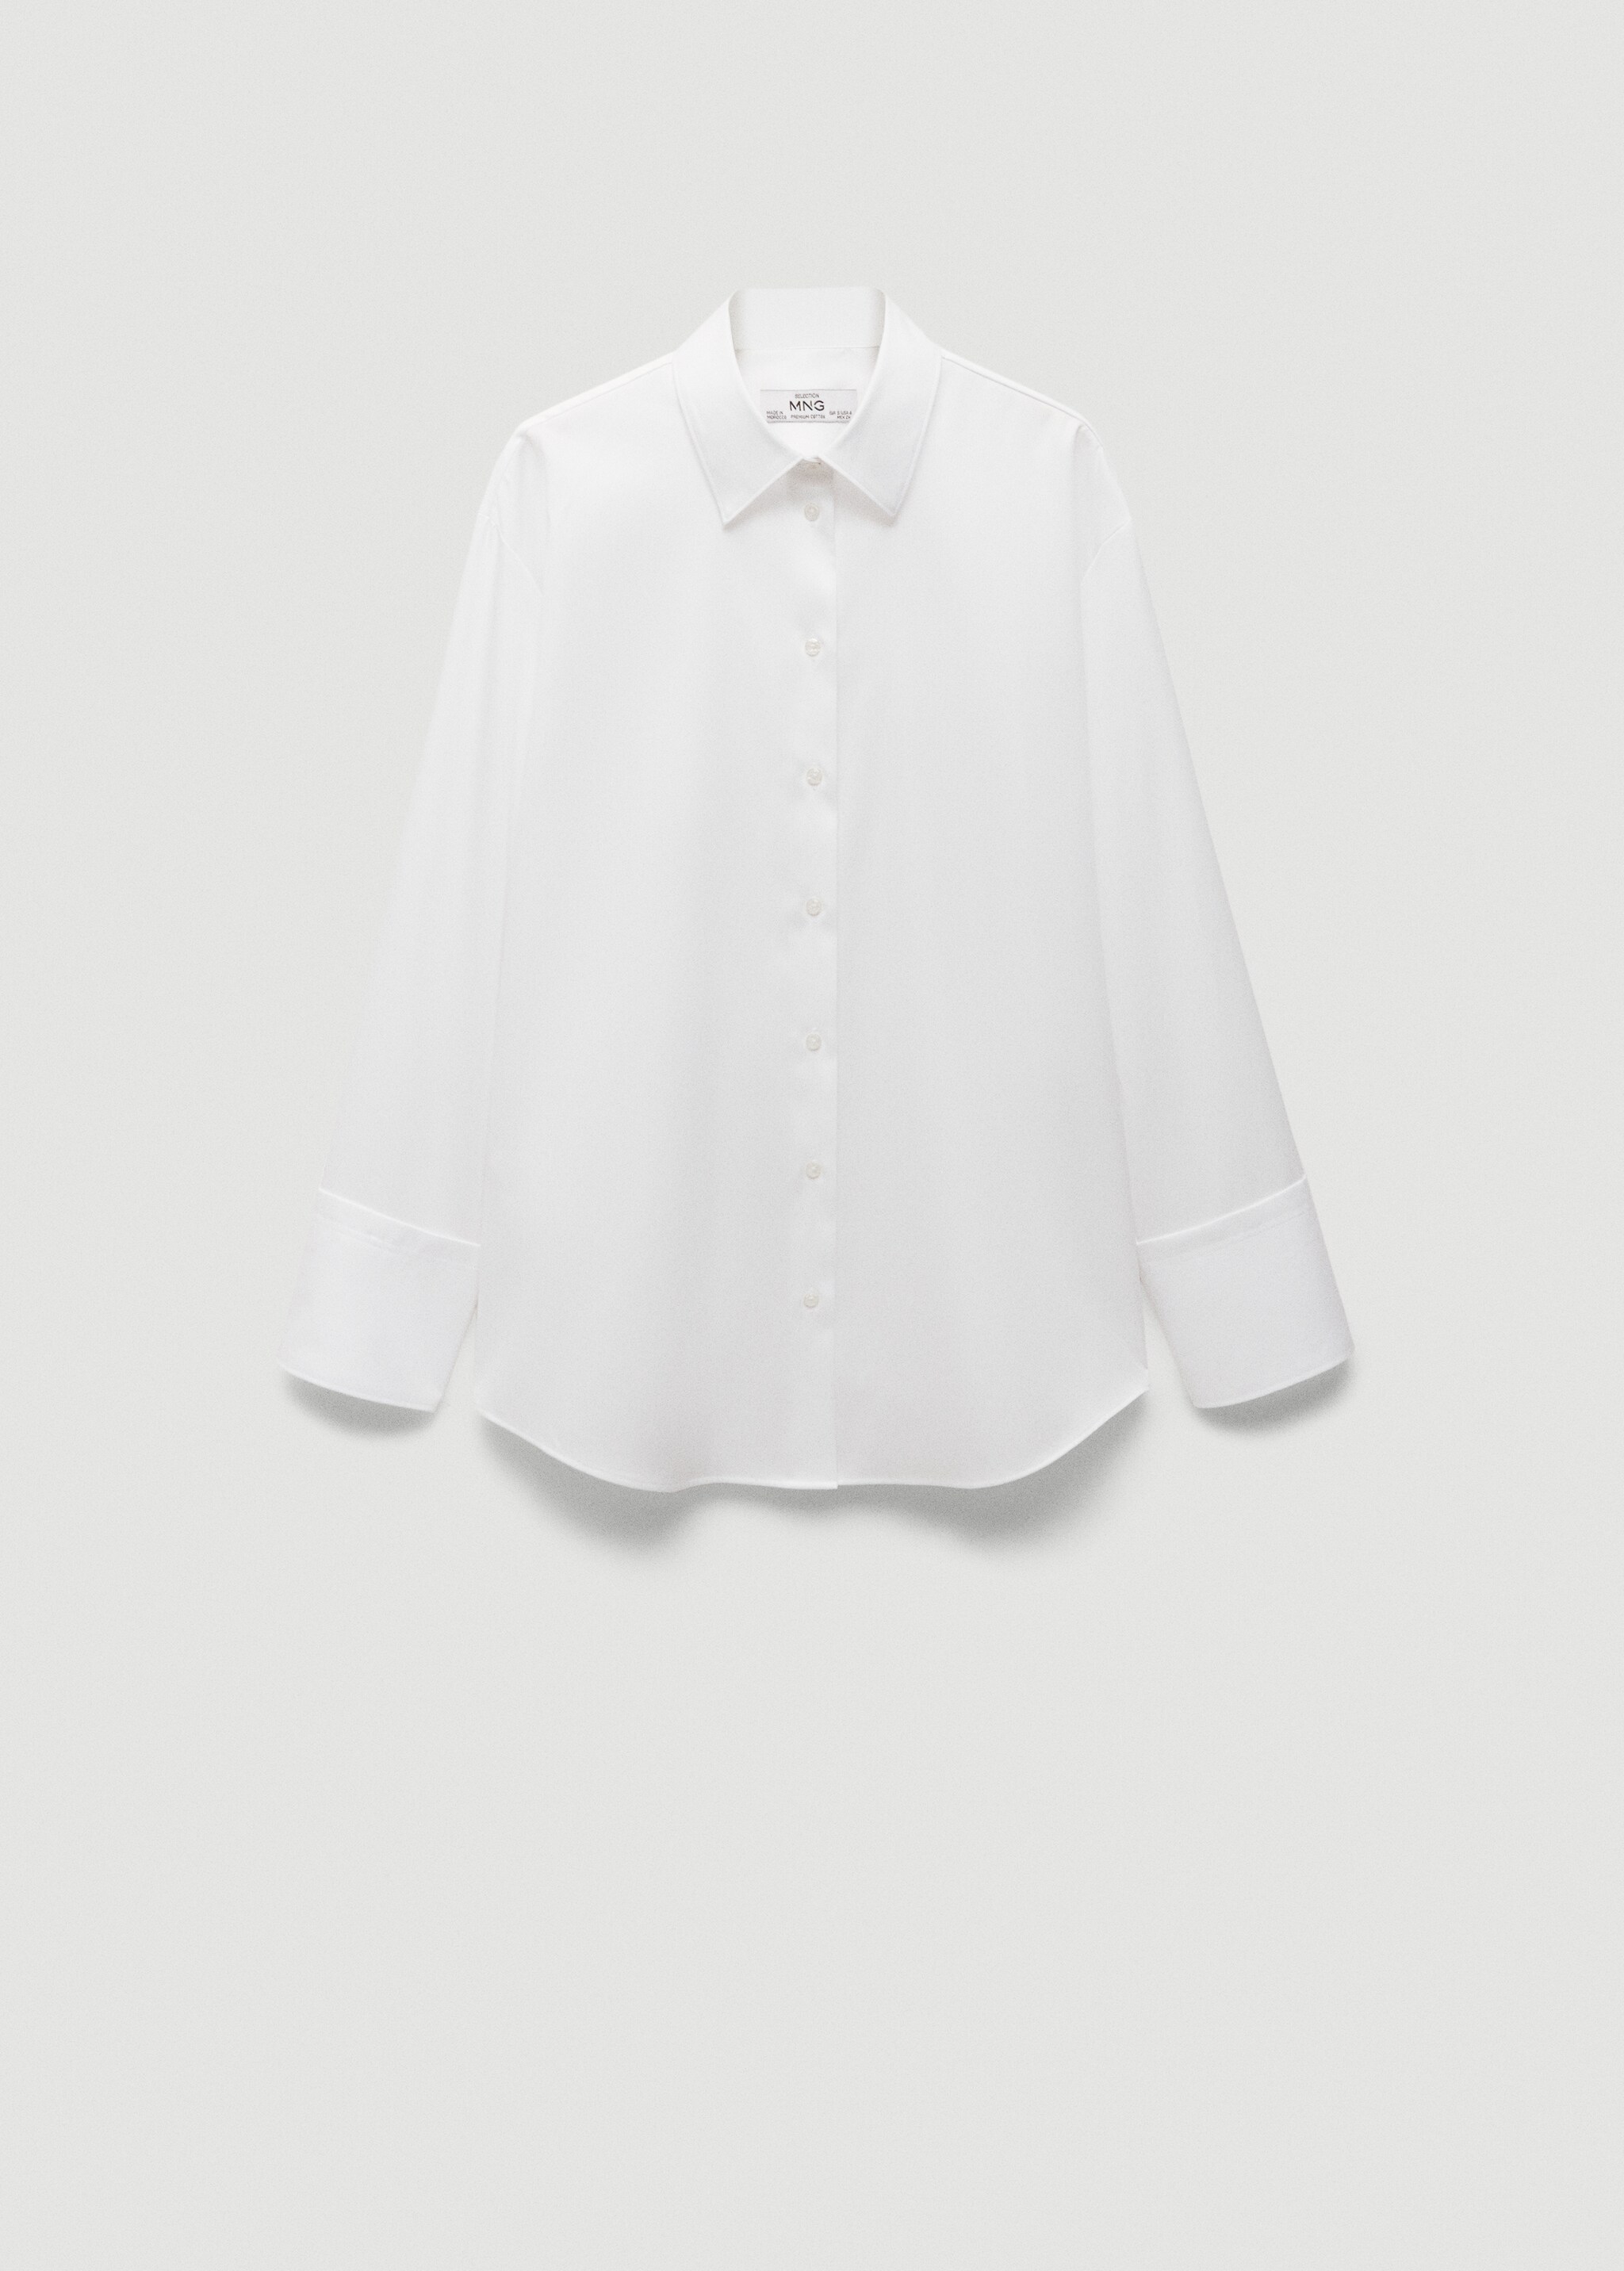 Camisa 100% algodón - Artículo sin modelo